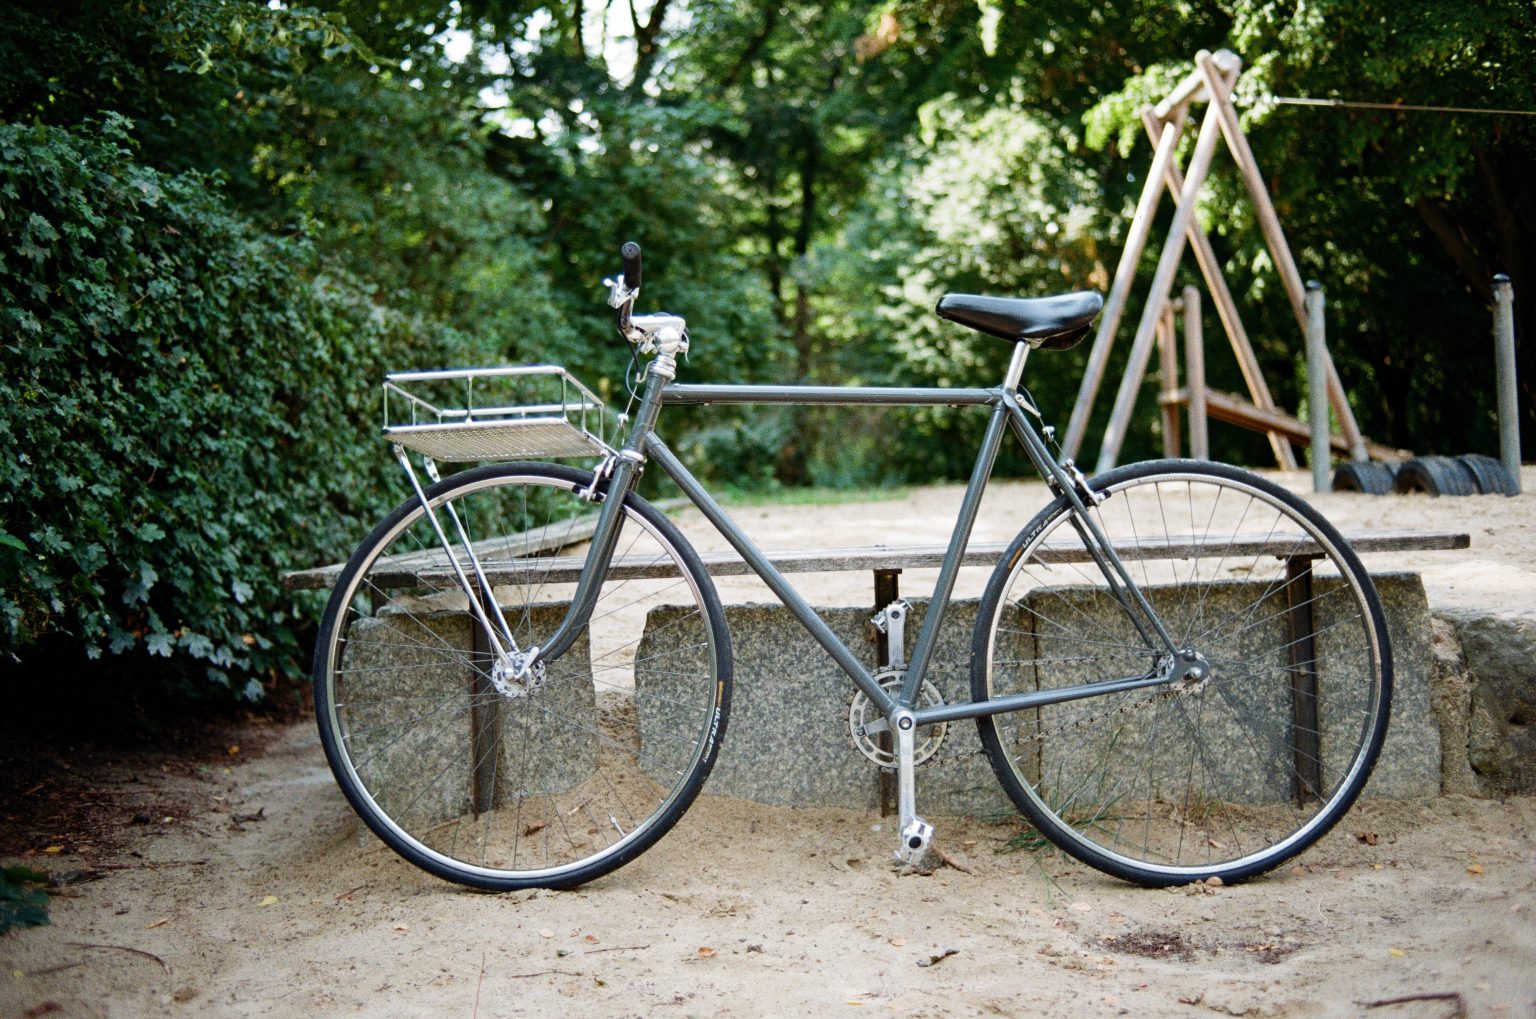 Fahrrad leihen in Berlin An diese Orten könnt ihr ein